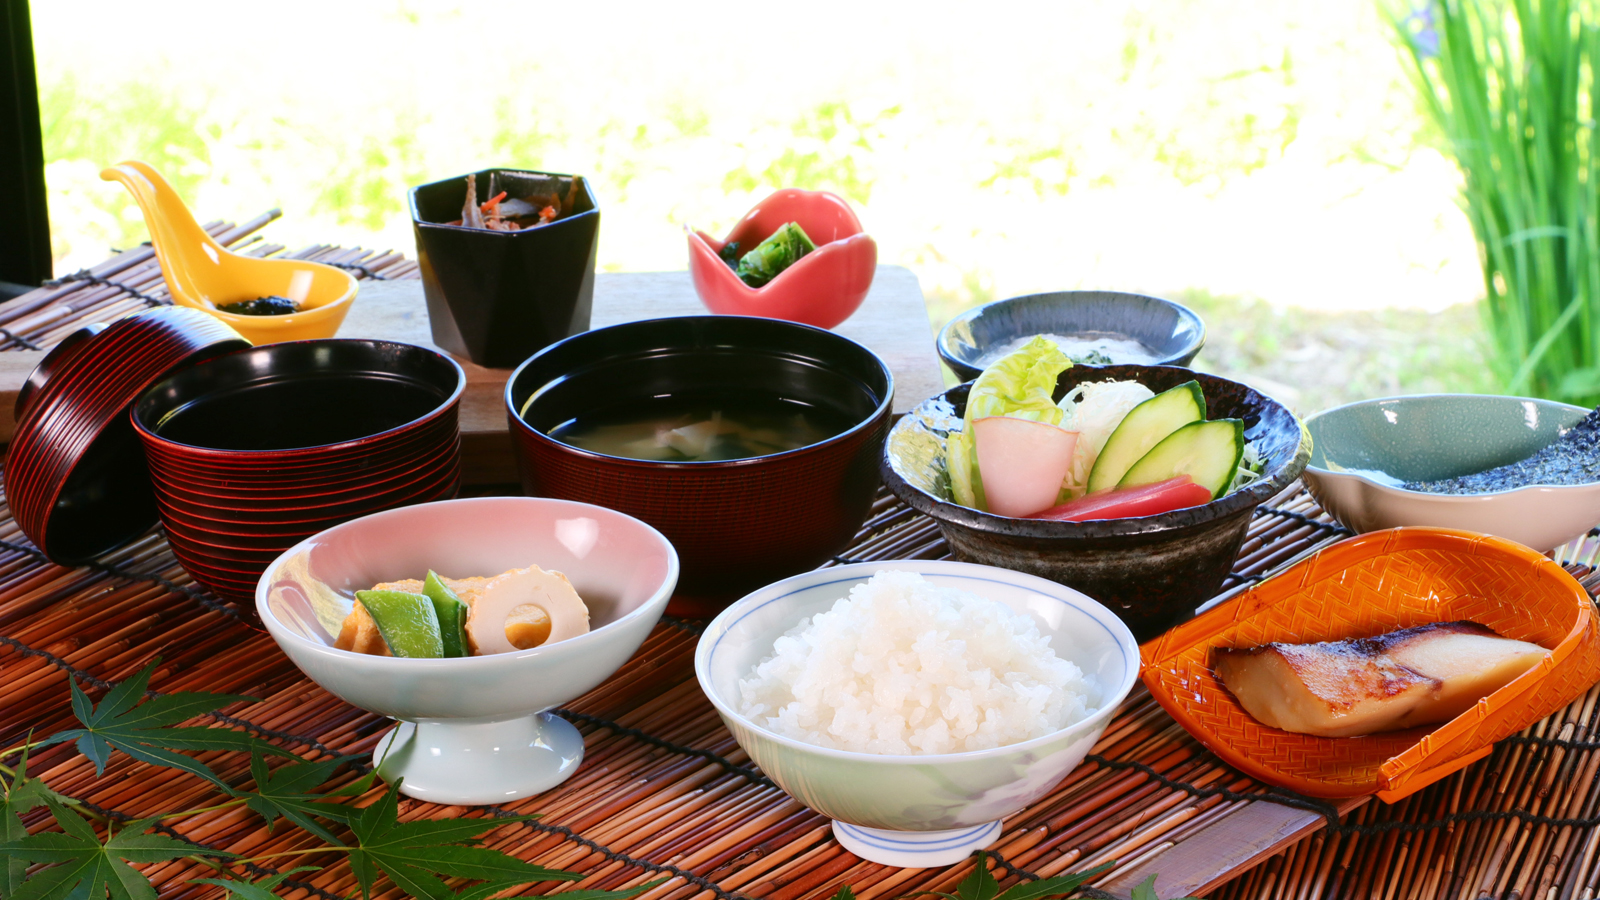 【朝食】体に優しい和朝食。炊き立てのご飯は、自家製のコシヒカリを使用しています。